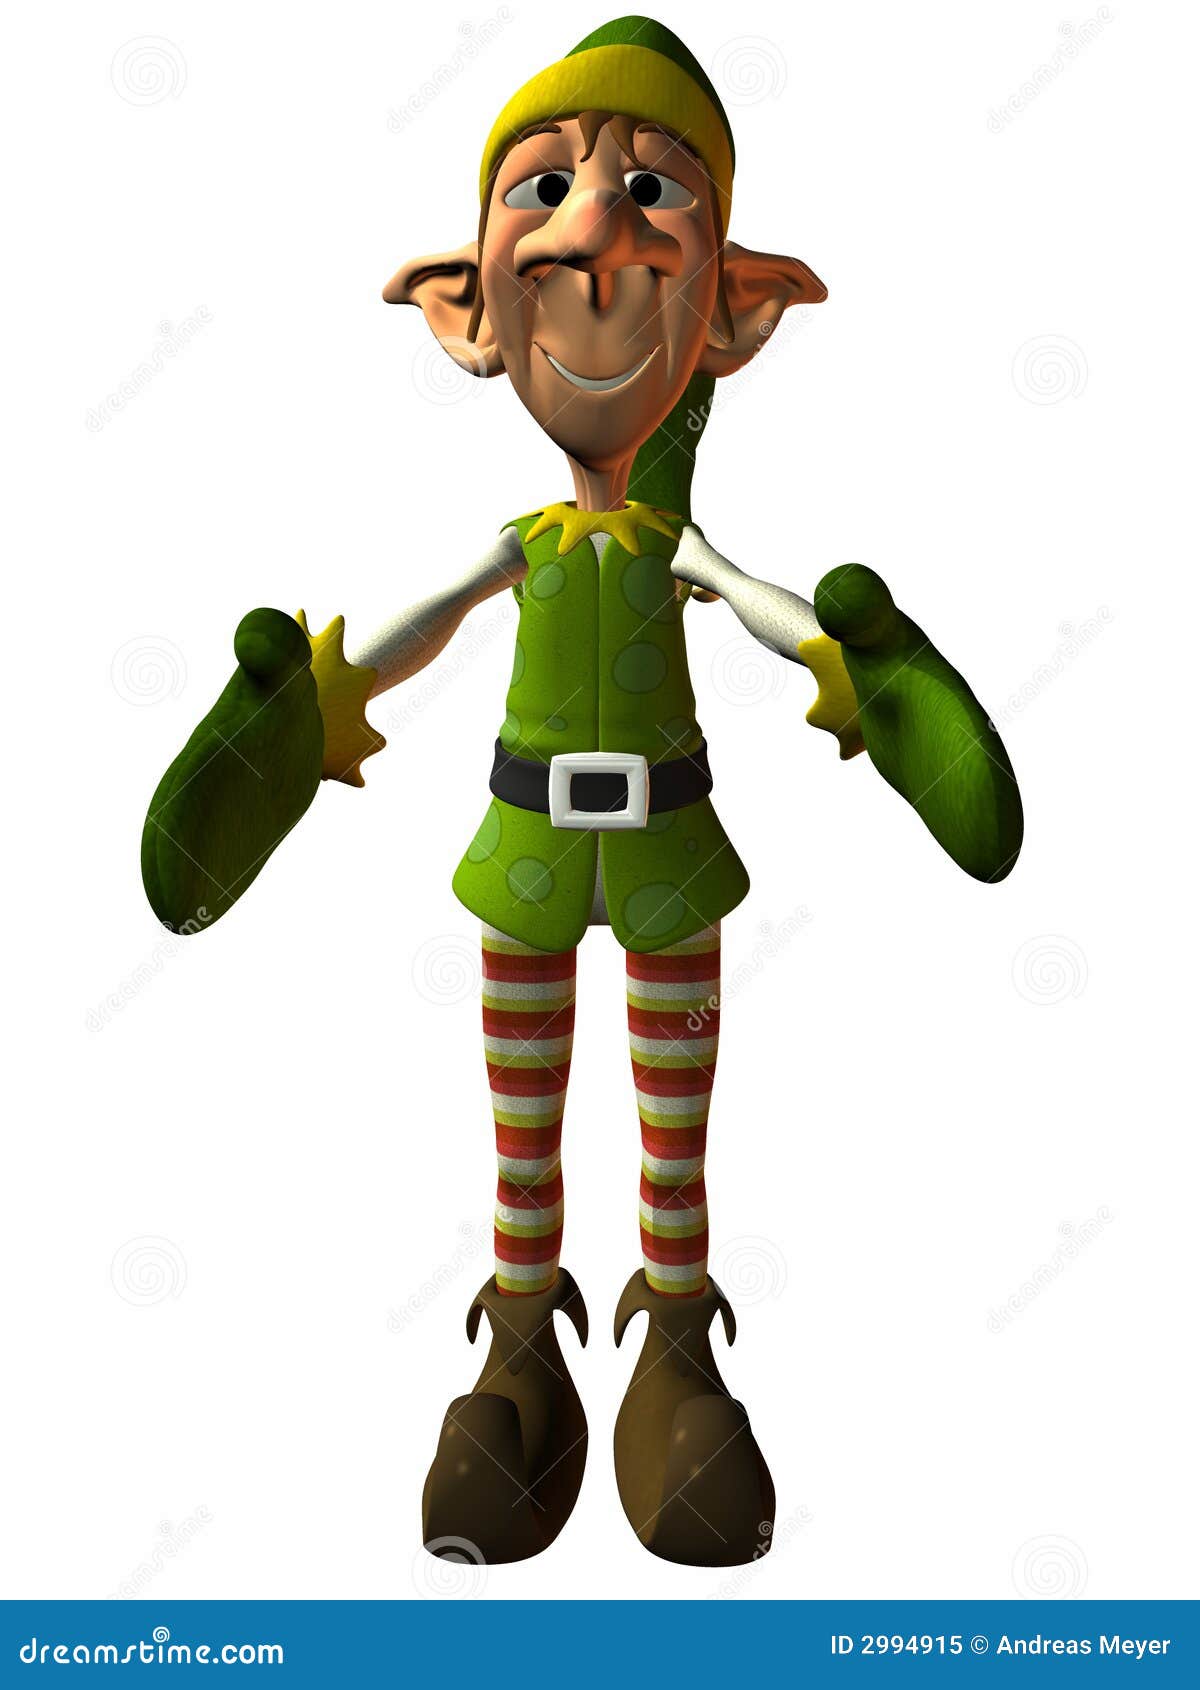 toon elf